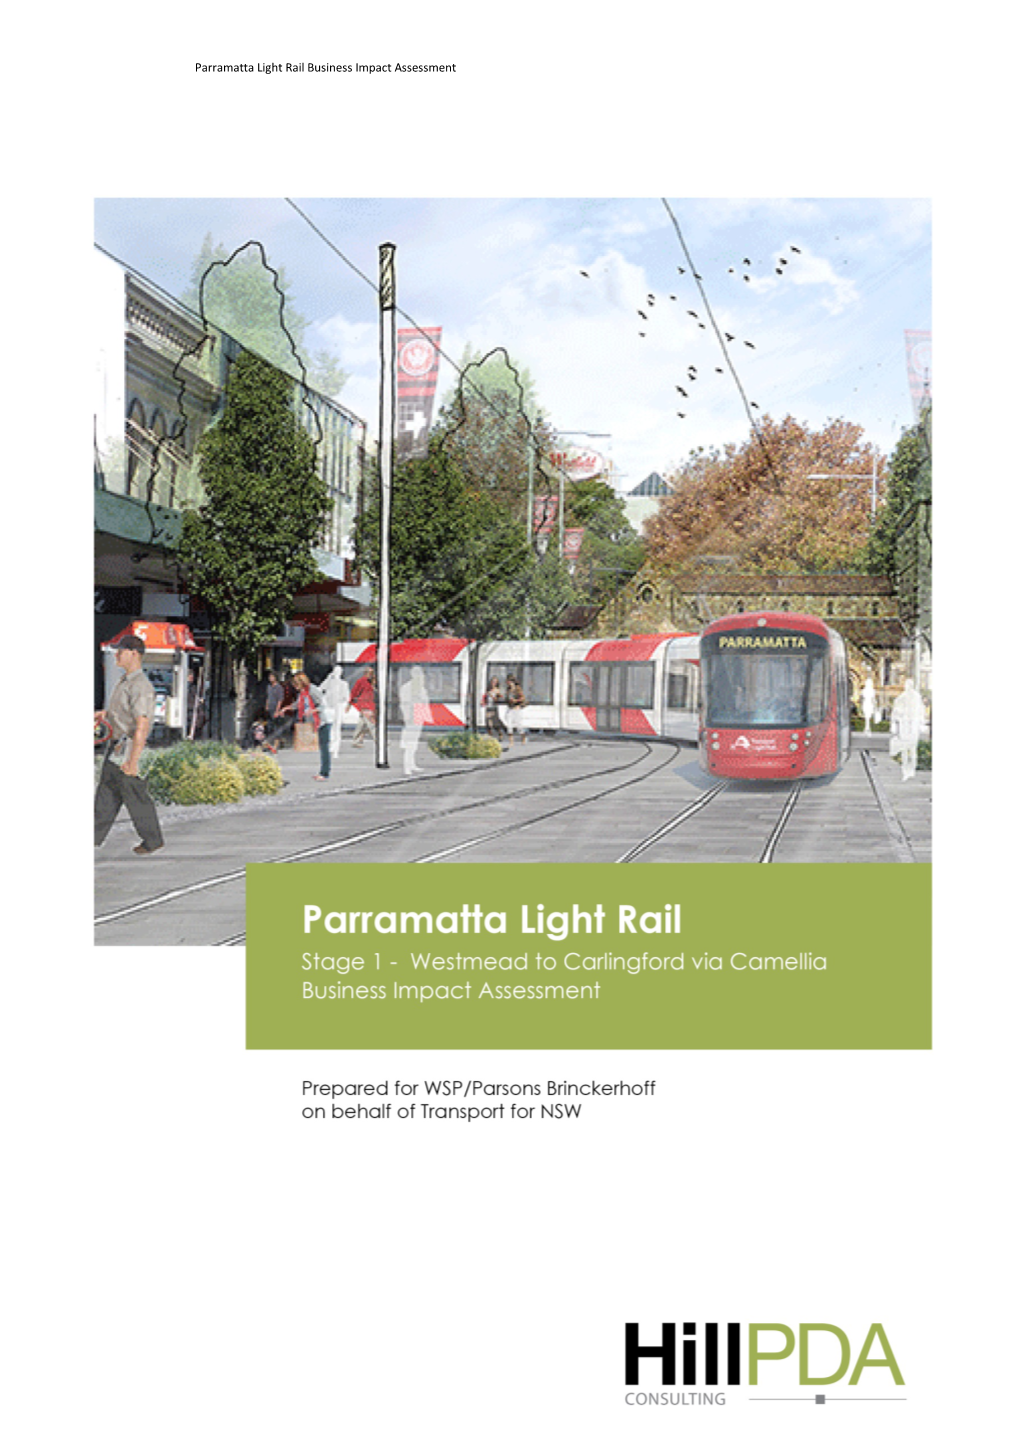 Parramatta Light Rail Business Impact Assessment